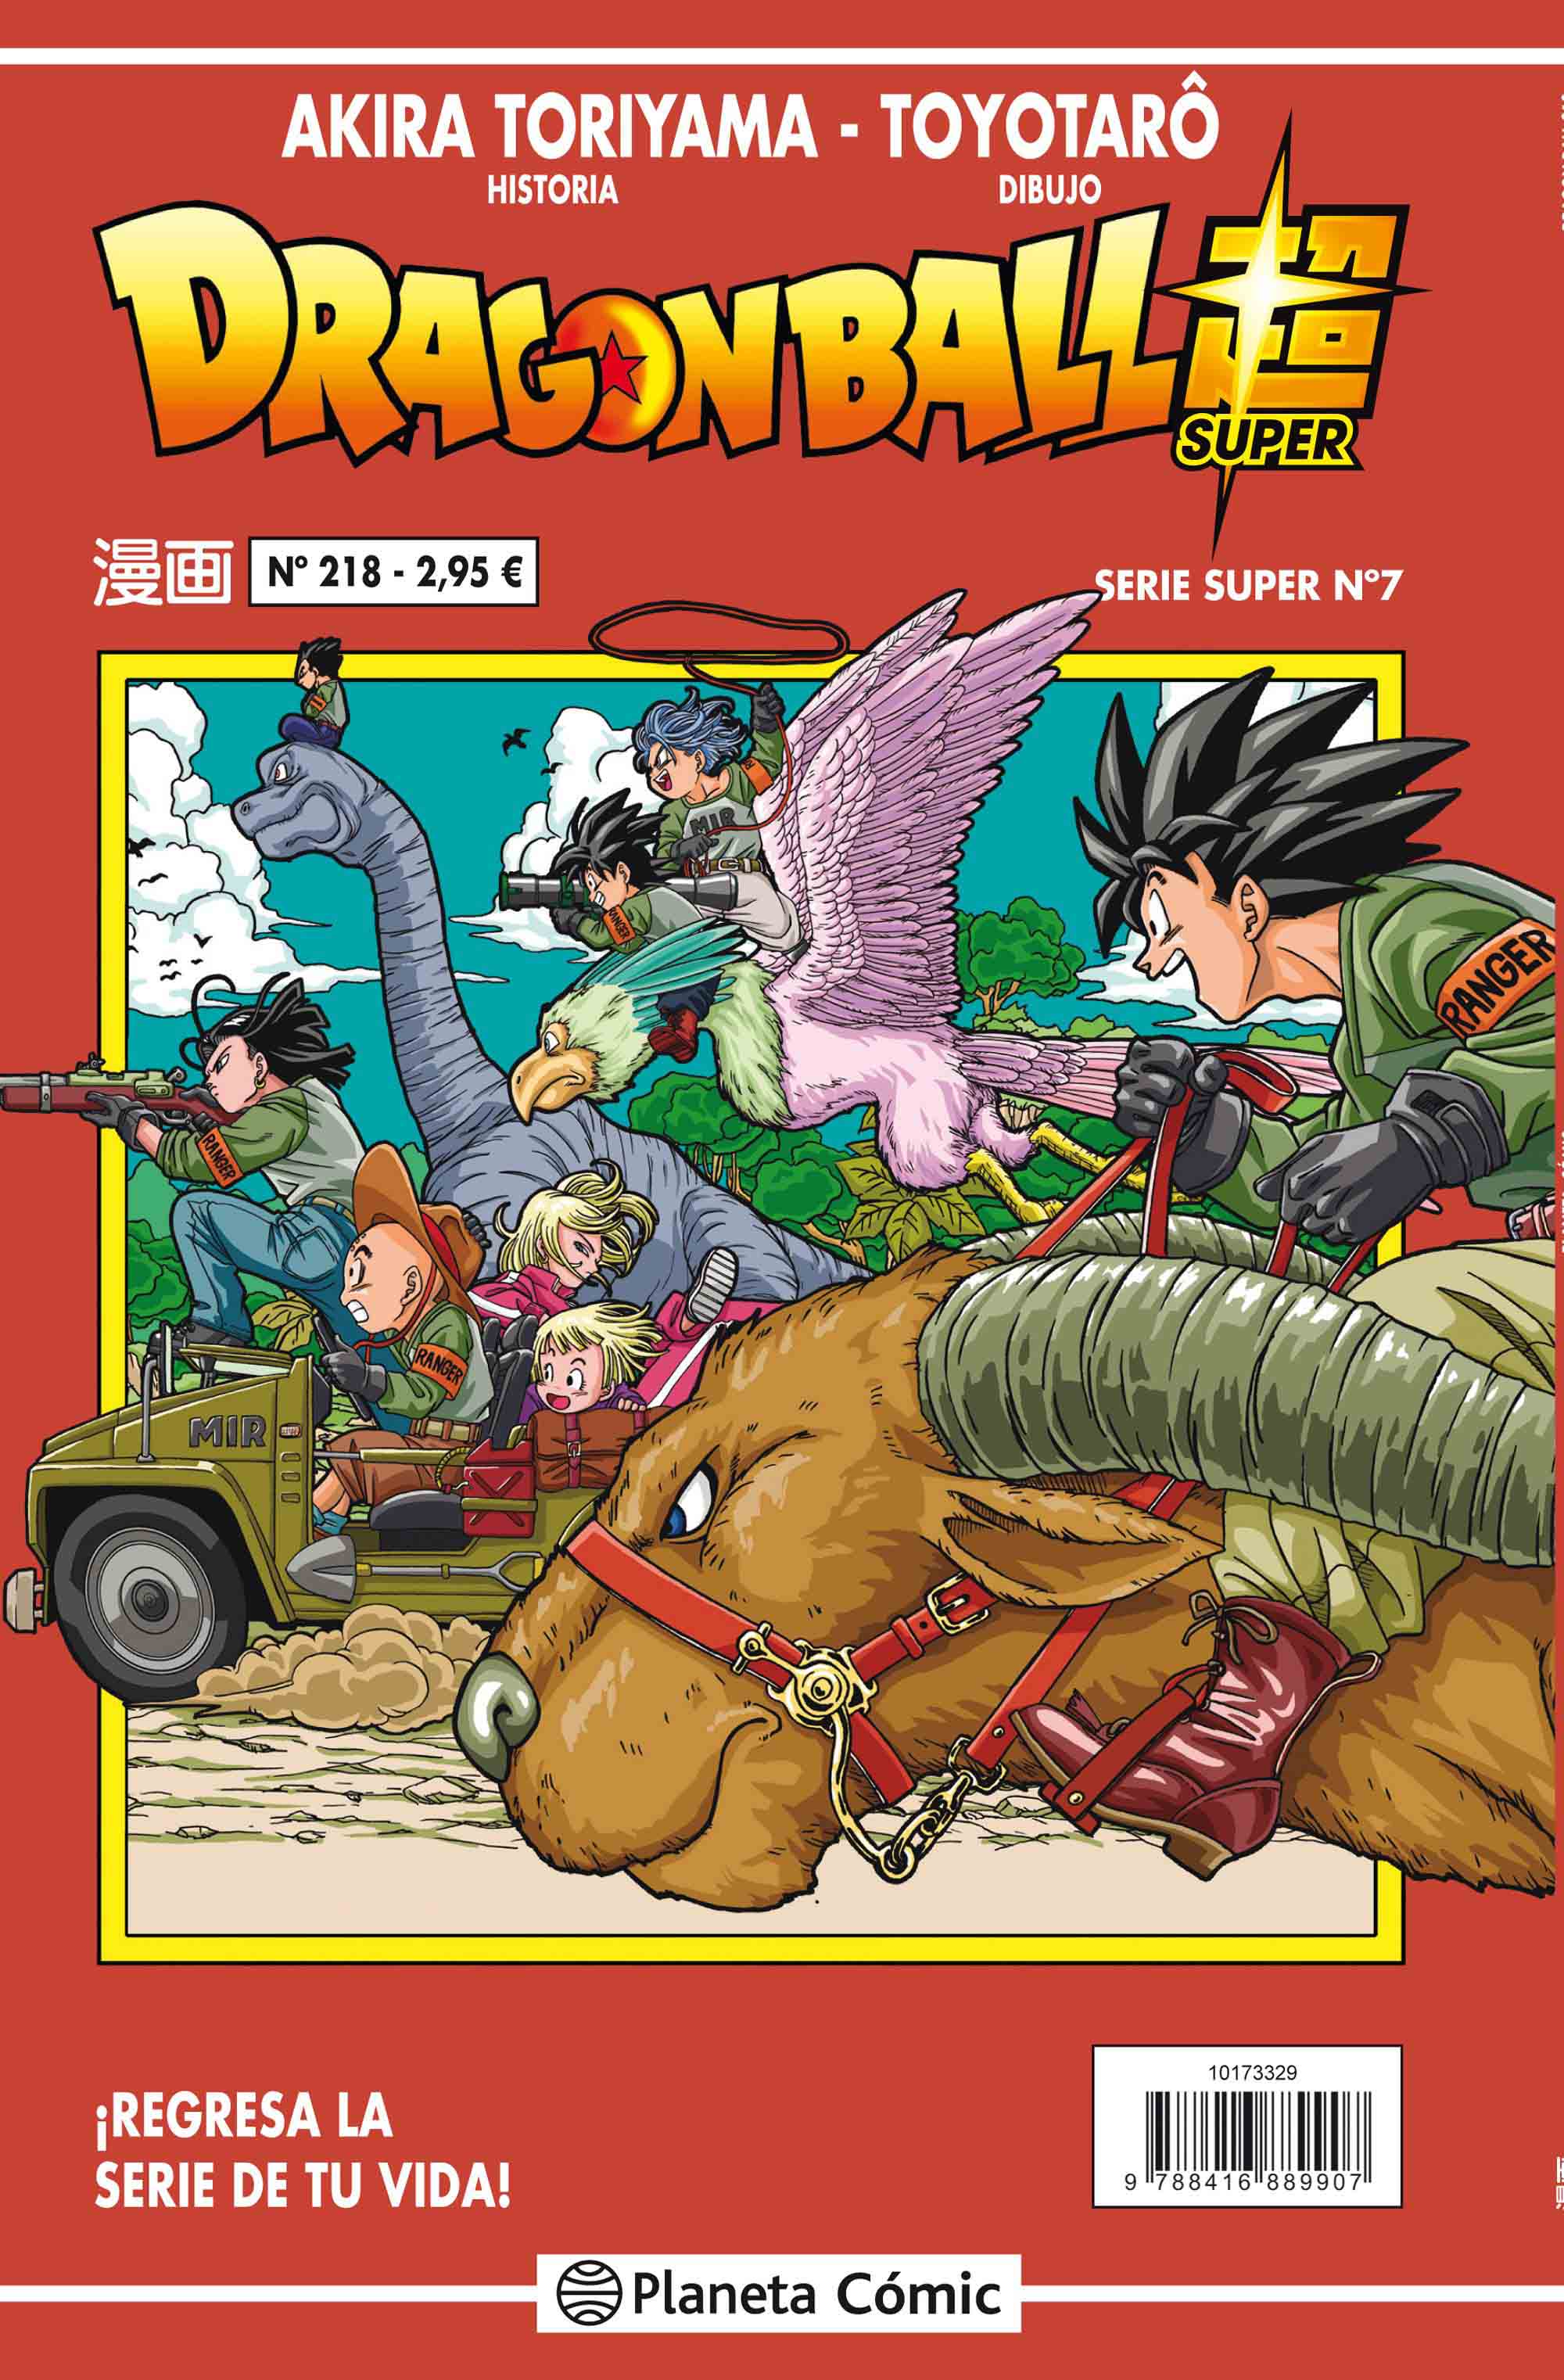 Reseña: ‘Dragon Ball Super’ nº 7 / nº 218 Serie Roja